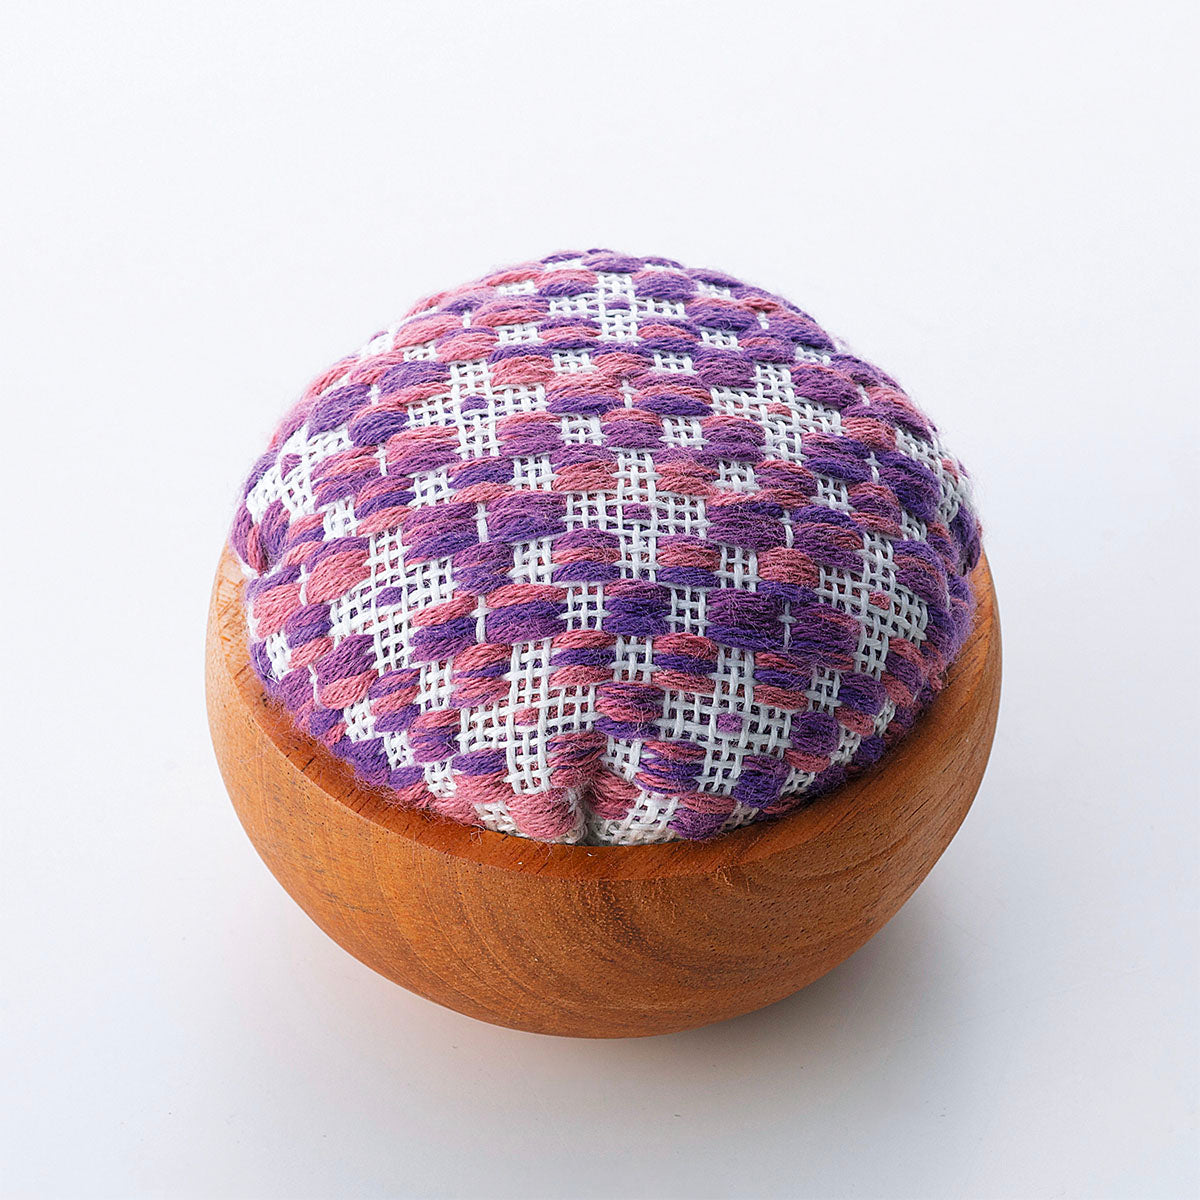 Kogin Embroidery Pincushion Bowl Kit